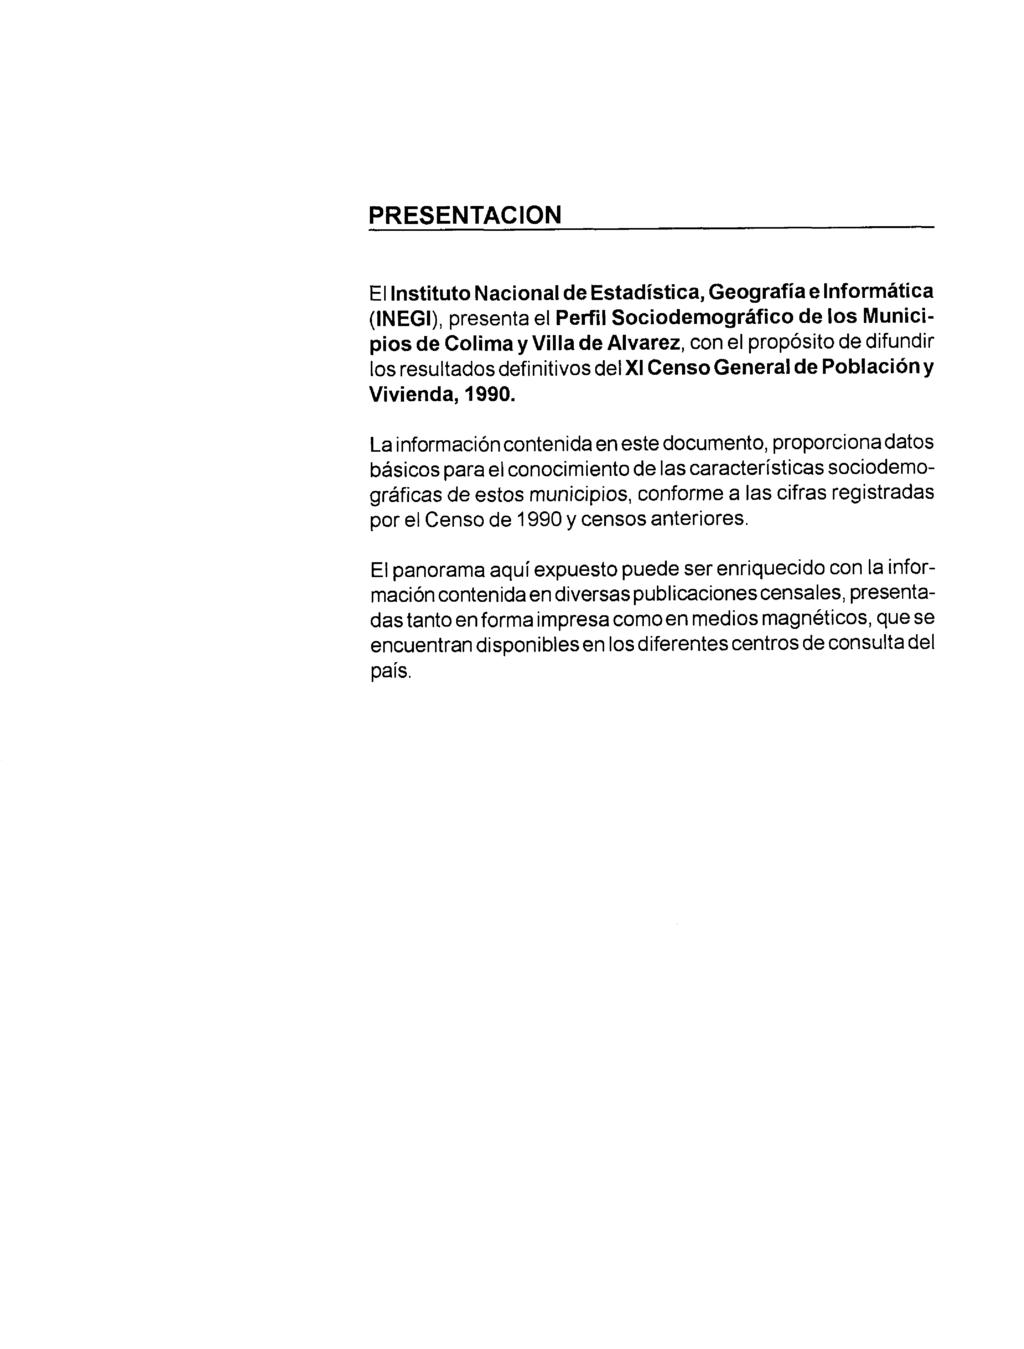 PRESENTACION El Instituto Nacional de Estadística, Geografía e Informática (INEGI), presenta el Peñil Sociodemográfico de los Municipios de Colima y Villa de Alvarez, con el propósito de difundir los